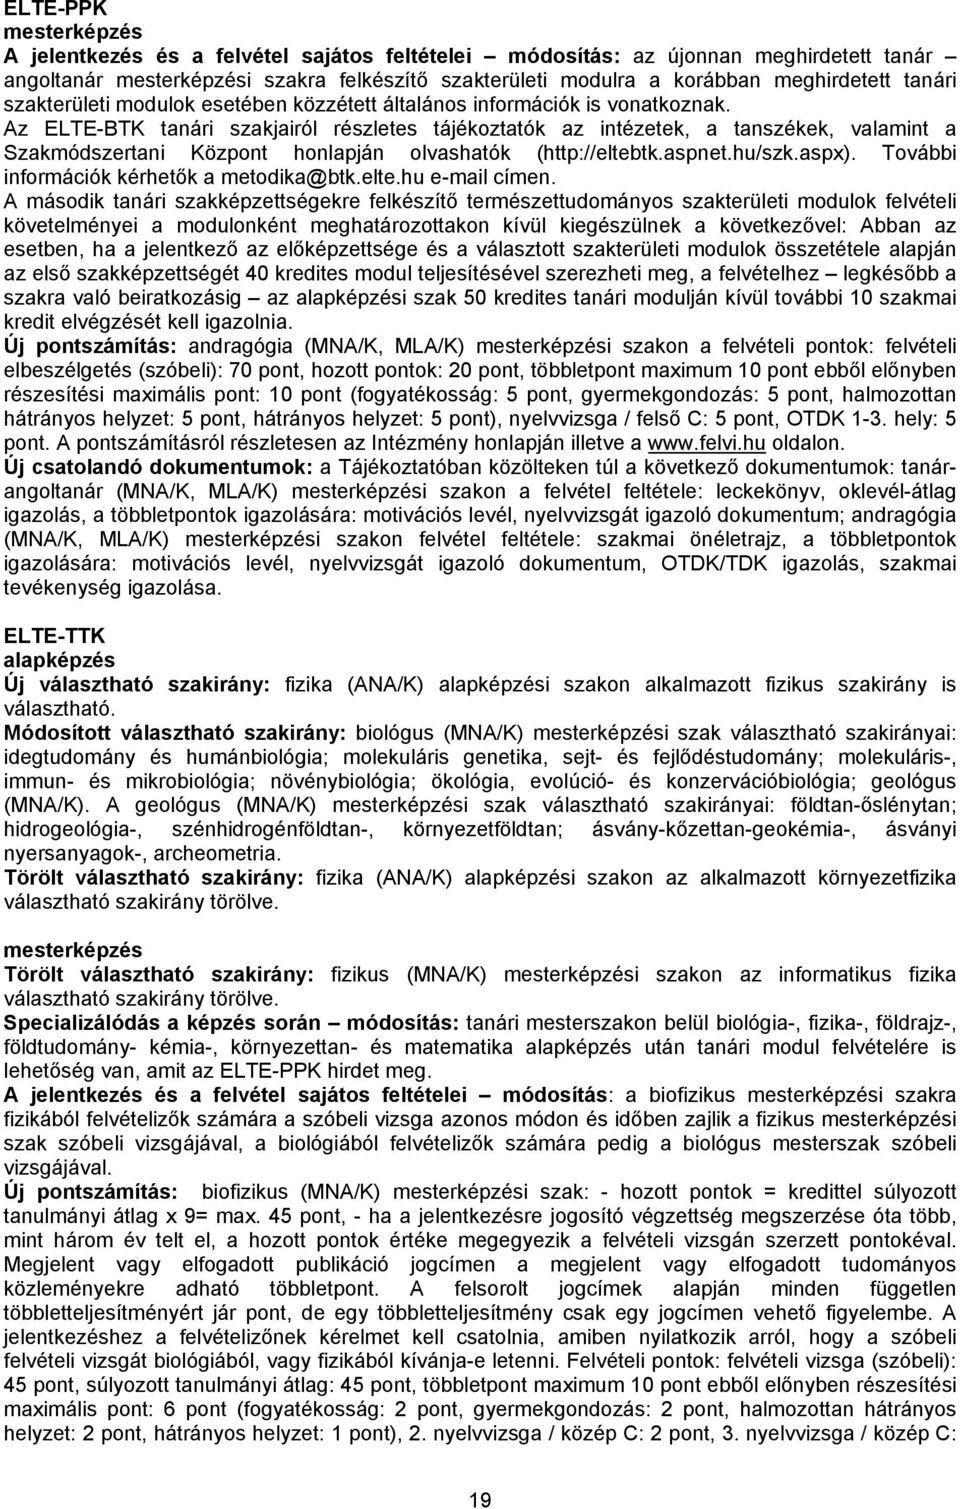 Az ELTE-BTK tanári szakjairól részletes tájékoztatók az intézetek, a tanszékek, valamint a Szakmódszertani Központ honlapján olvashatók (http://eltebtk.aspnet.hu/szk.aspx).